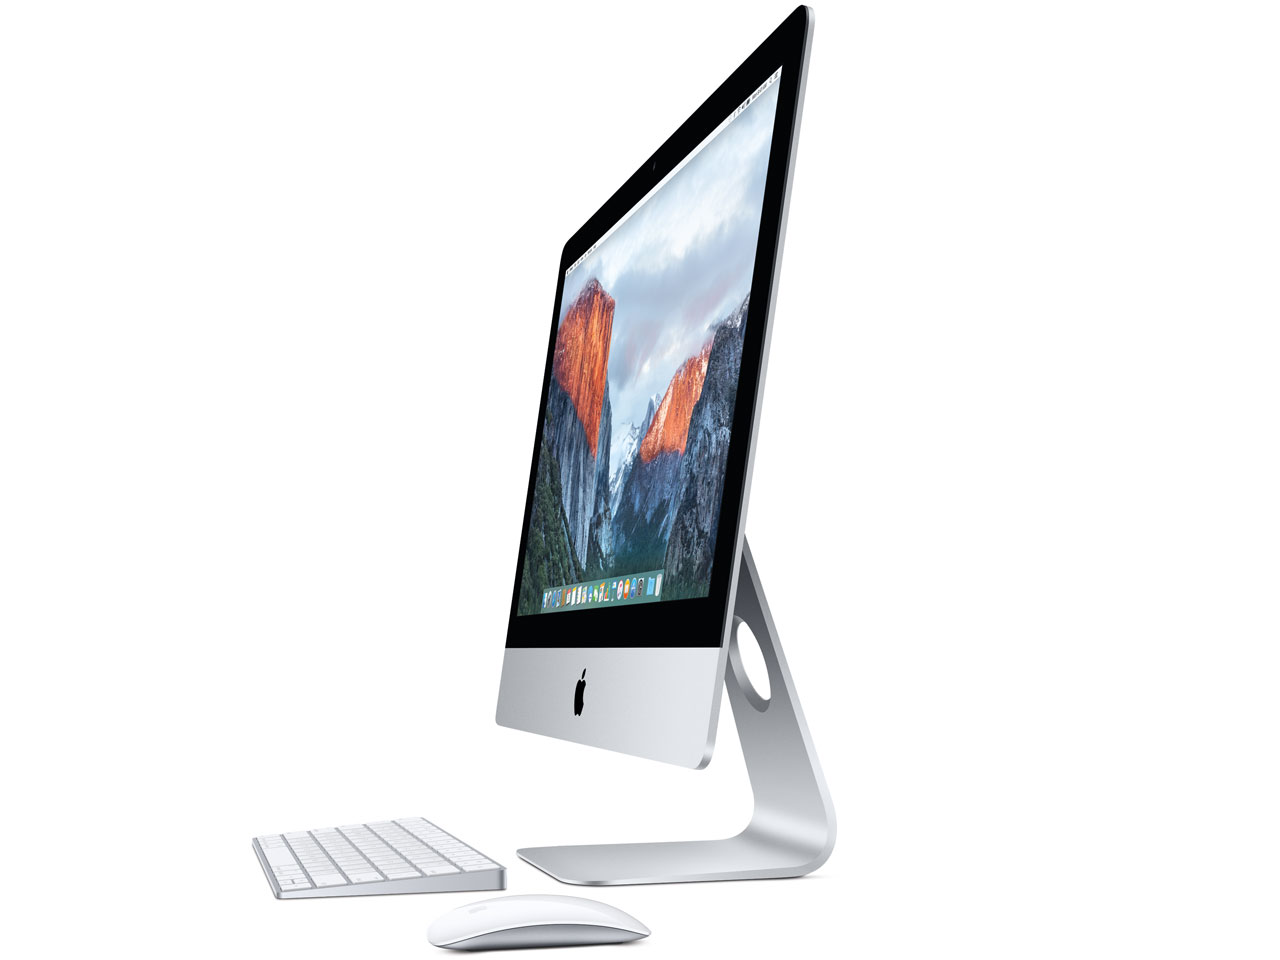 iMac 21.5 2.8G 8G 1TB HDD MK442J/A apple